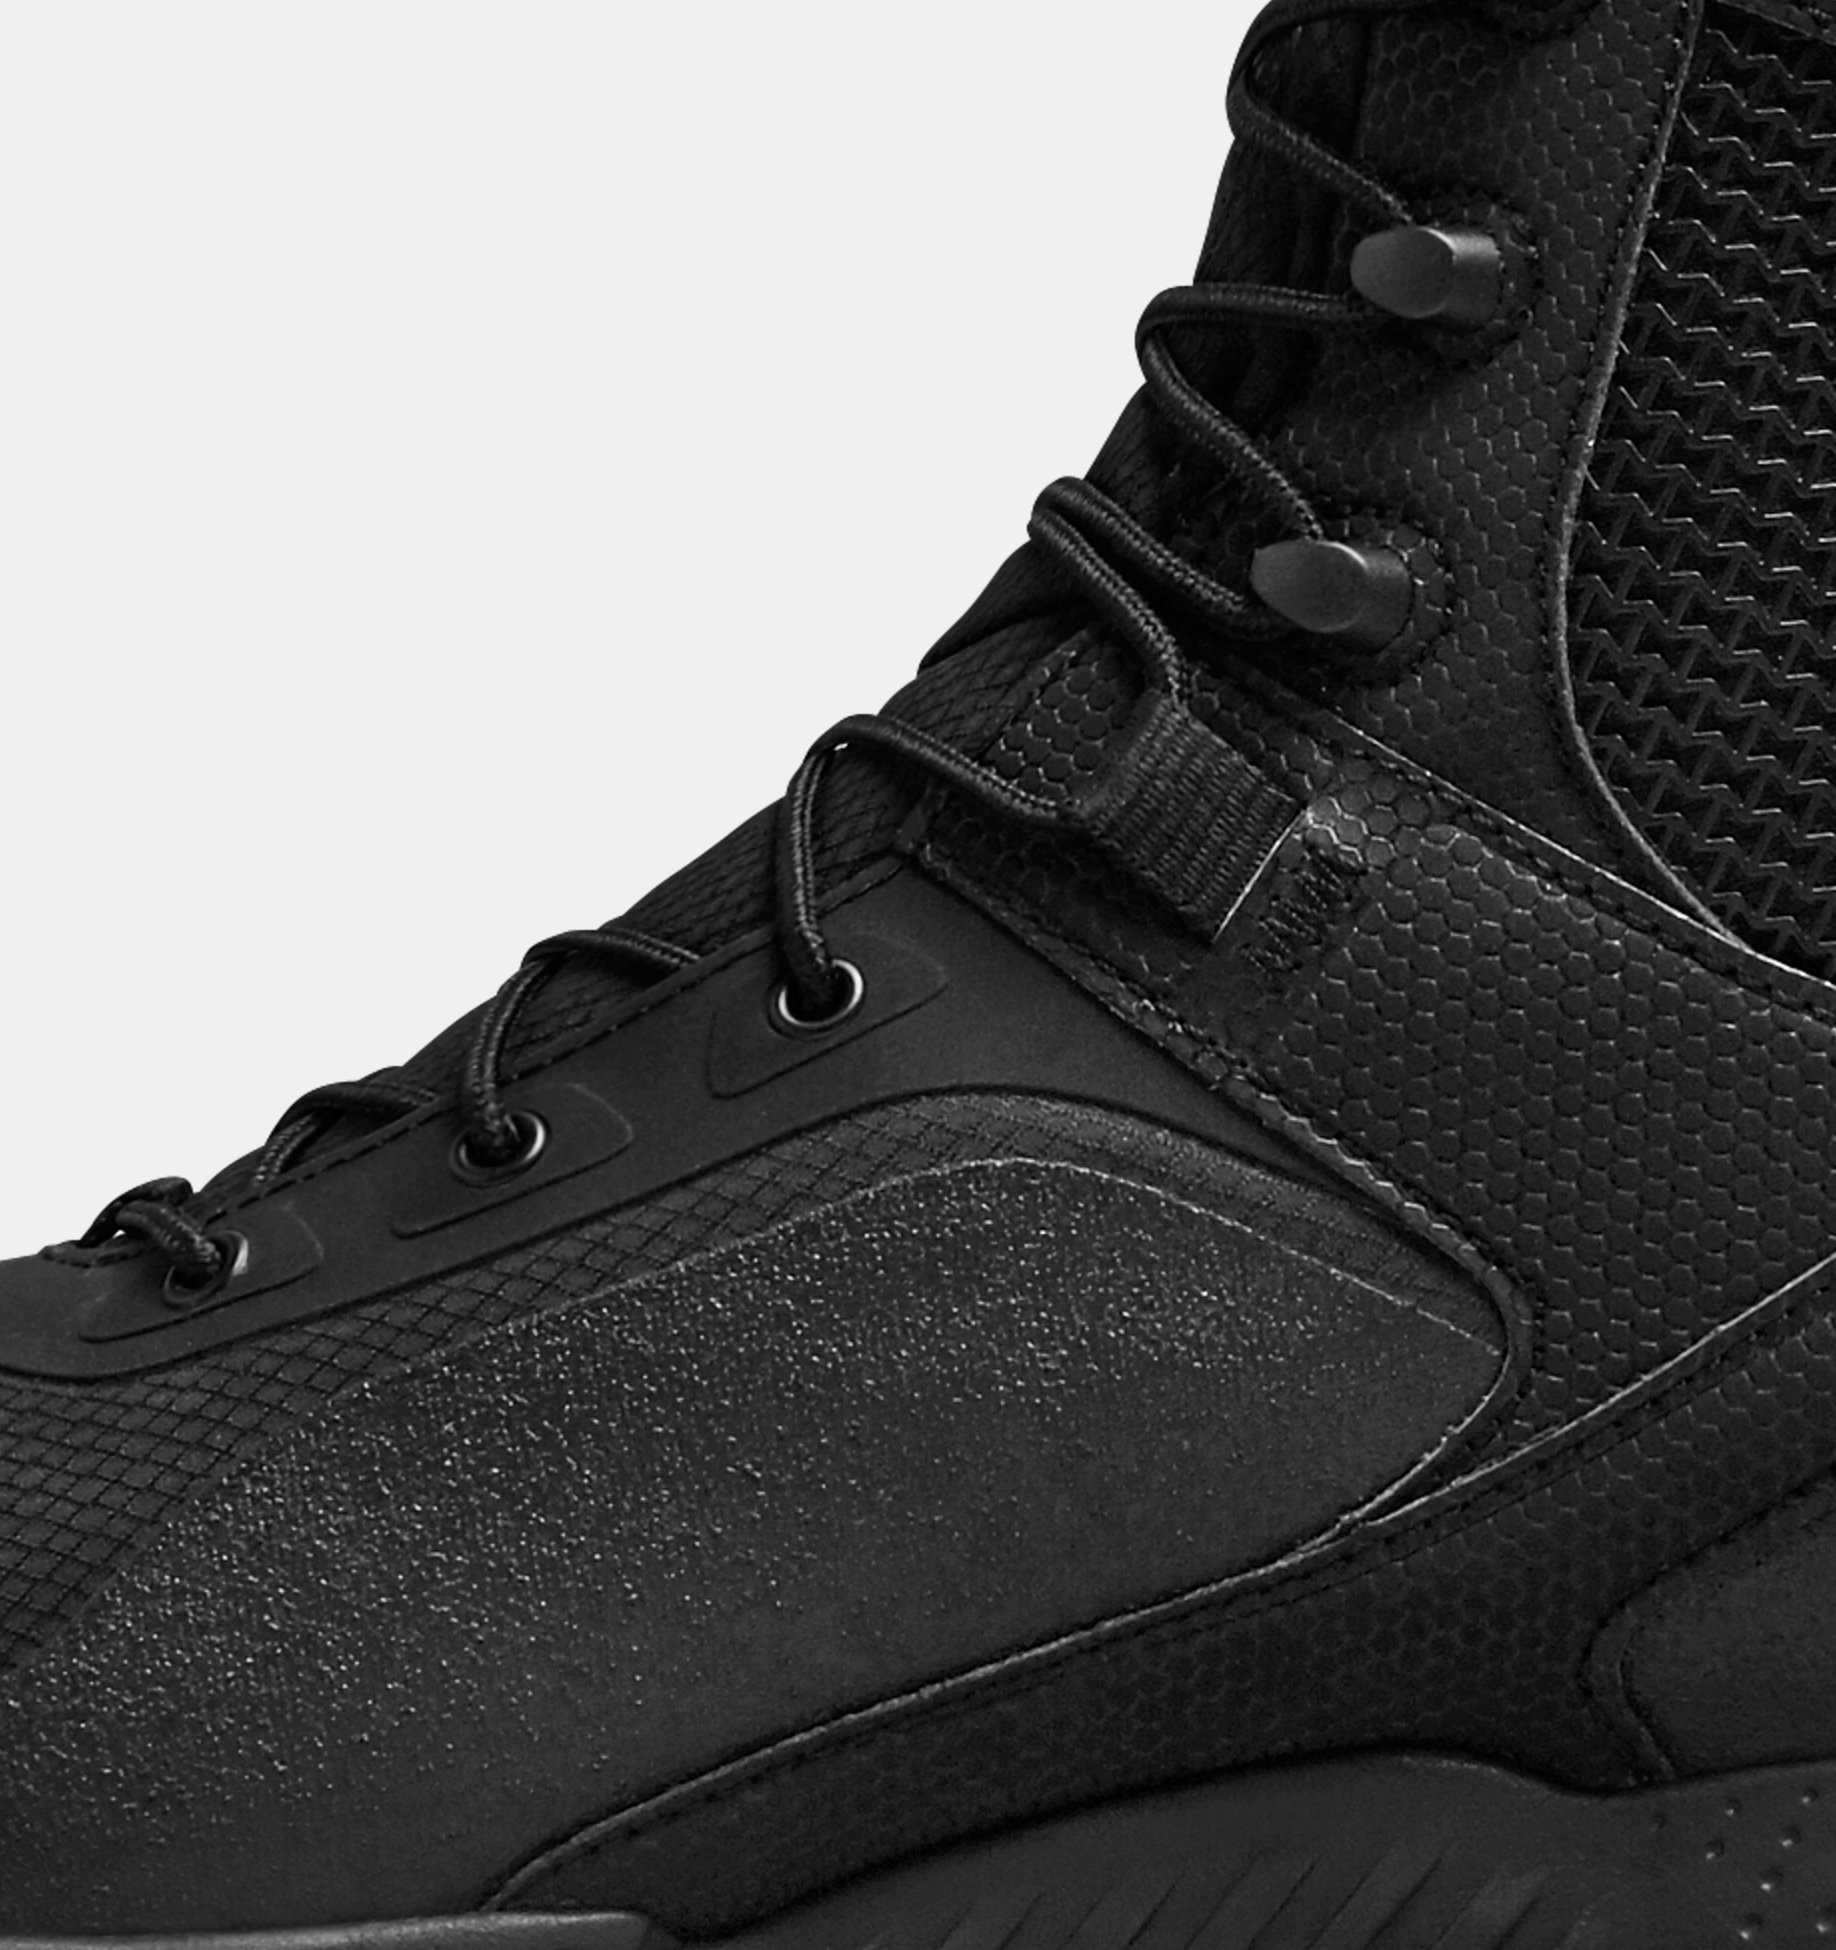 Under Armour Men's UA Valsetz RTS 1.5 Side Zip Tactical Boots Black Men  10.5